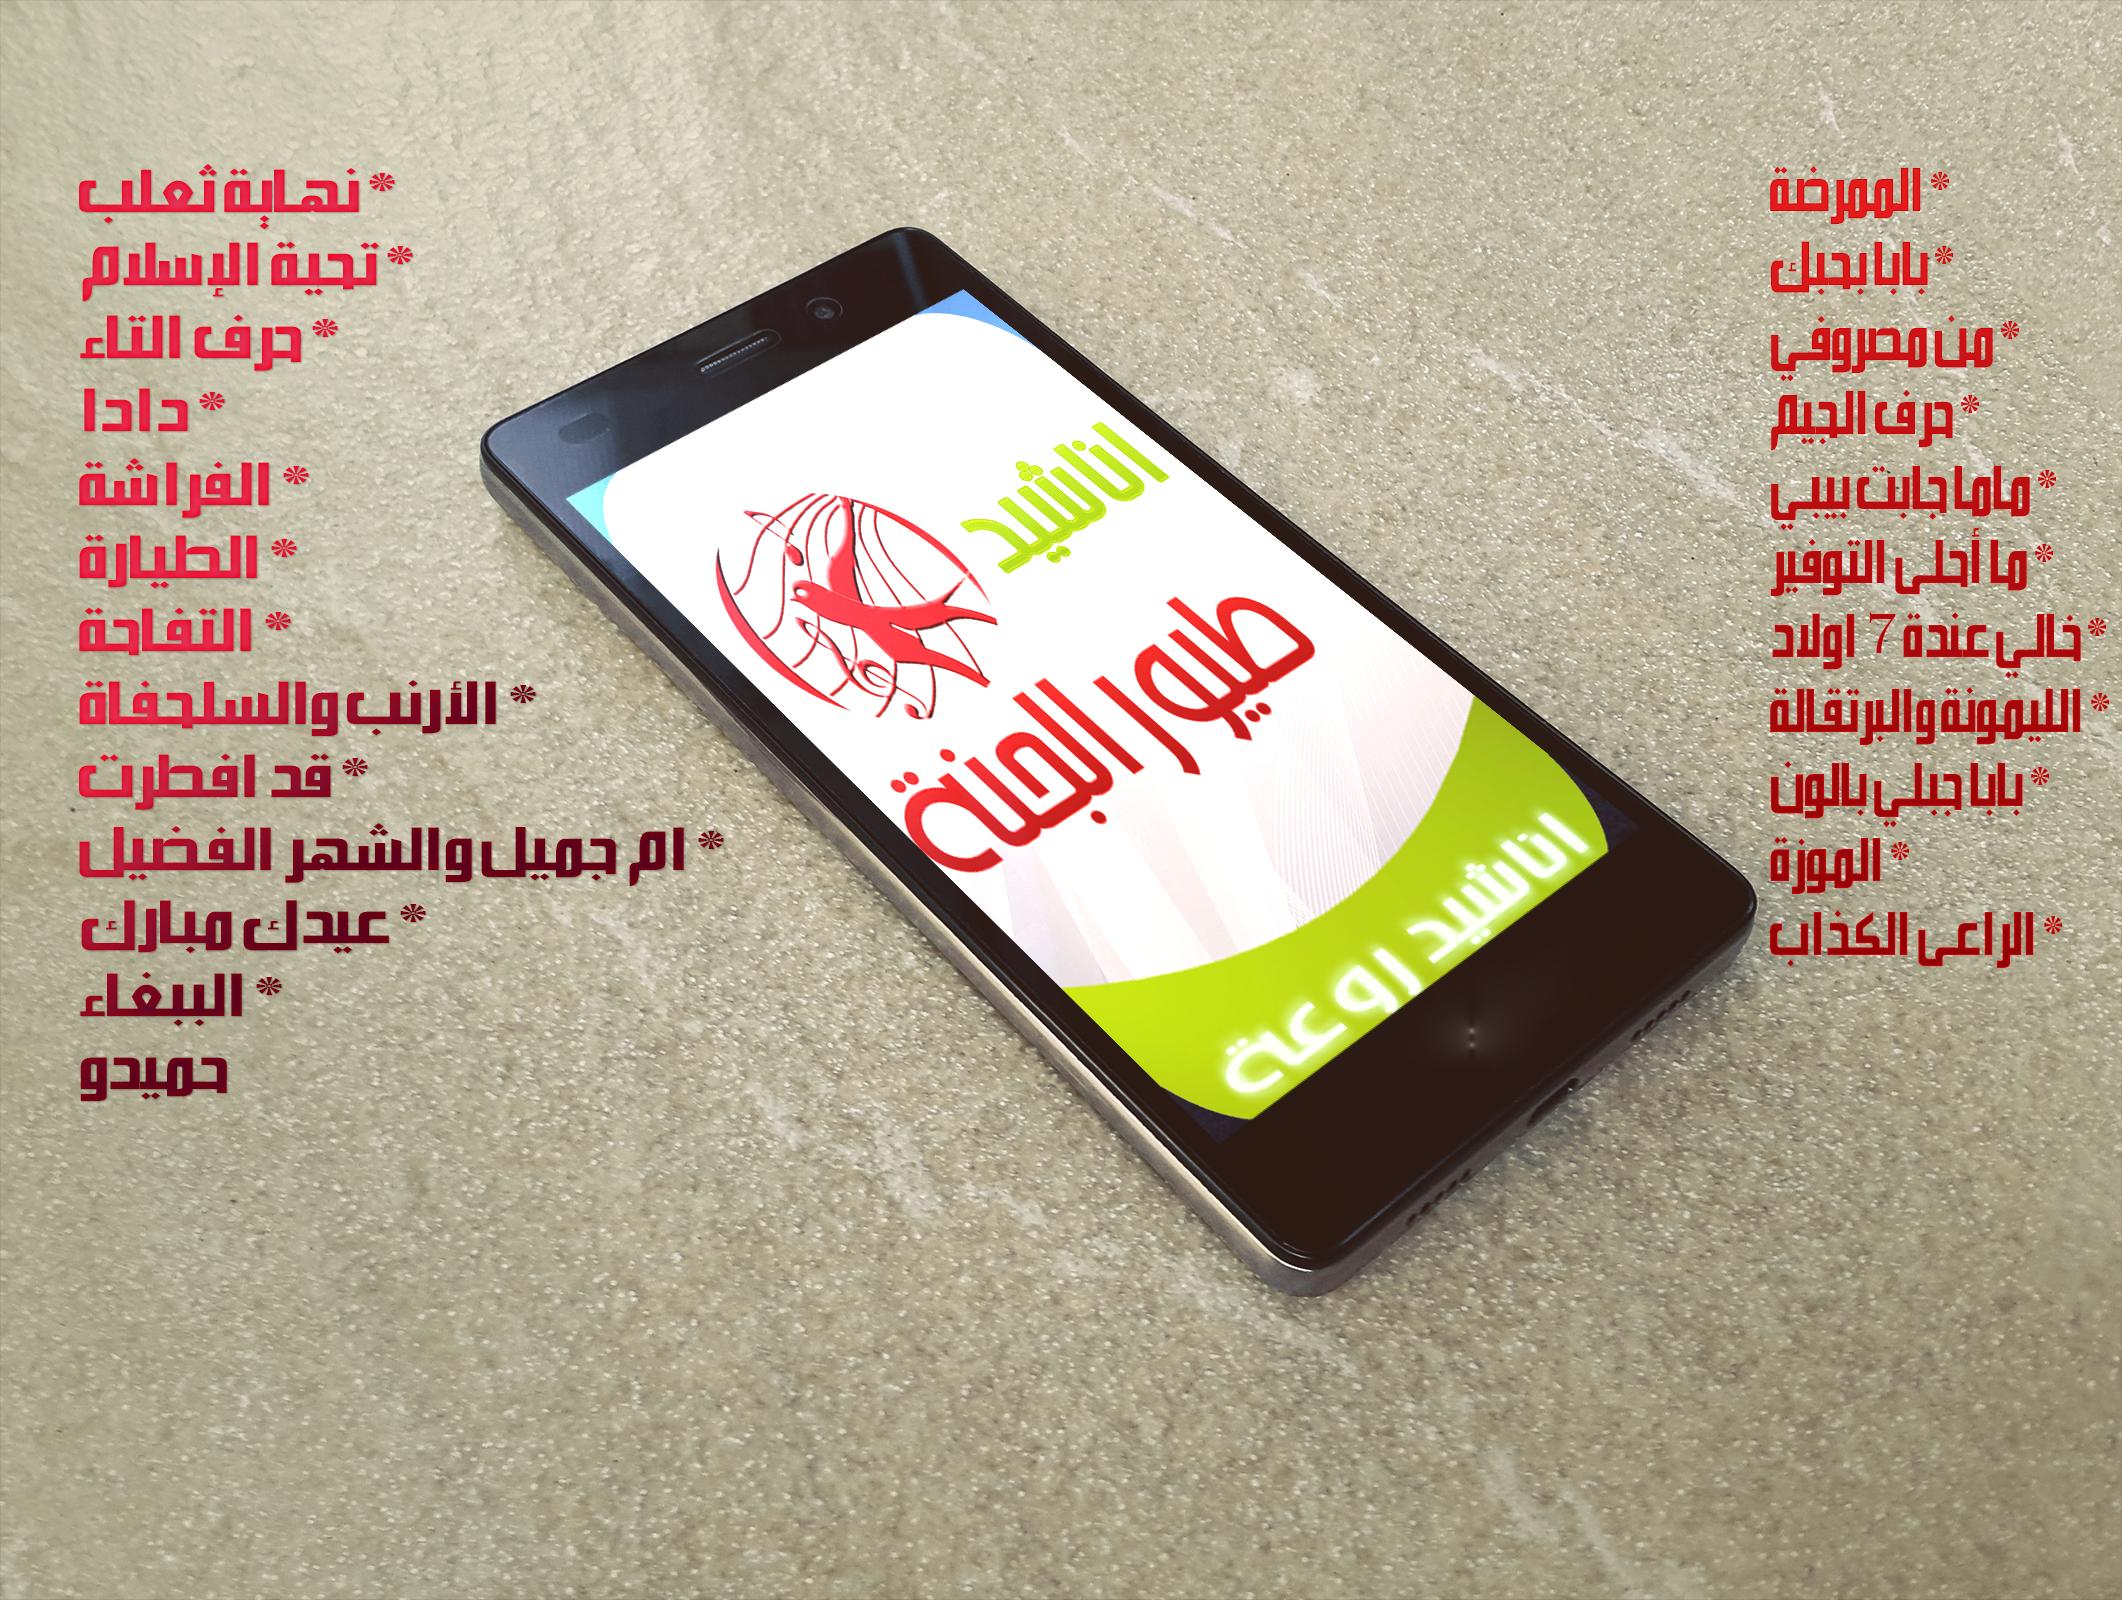 اناشيد اطفال _ طيور الجنة APK für Android herunterladen